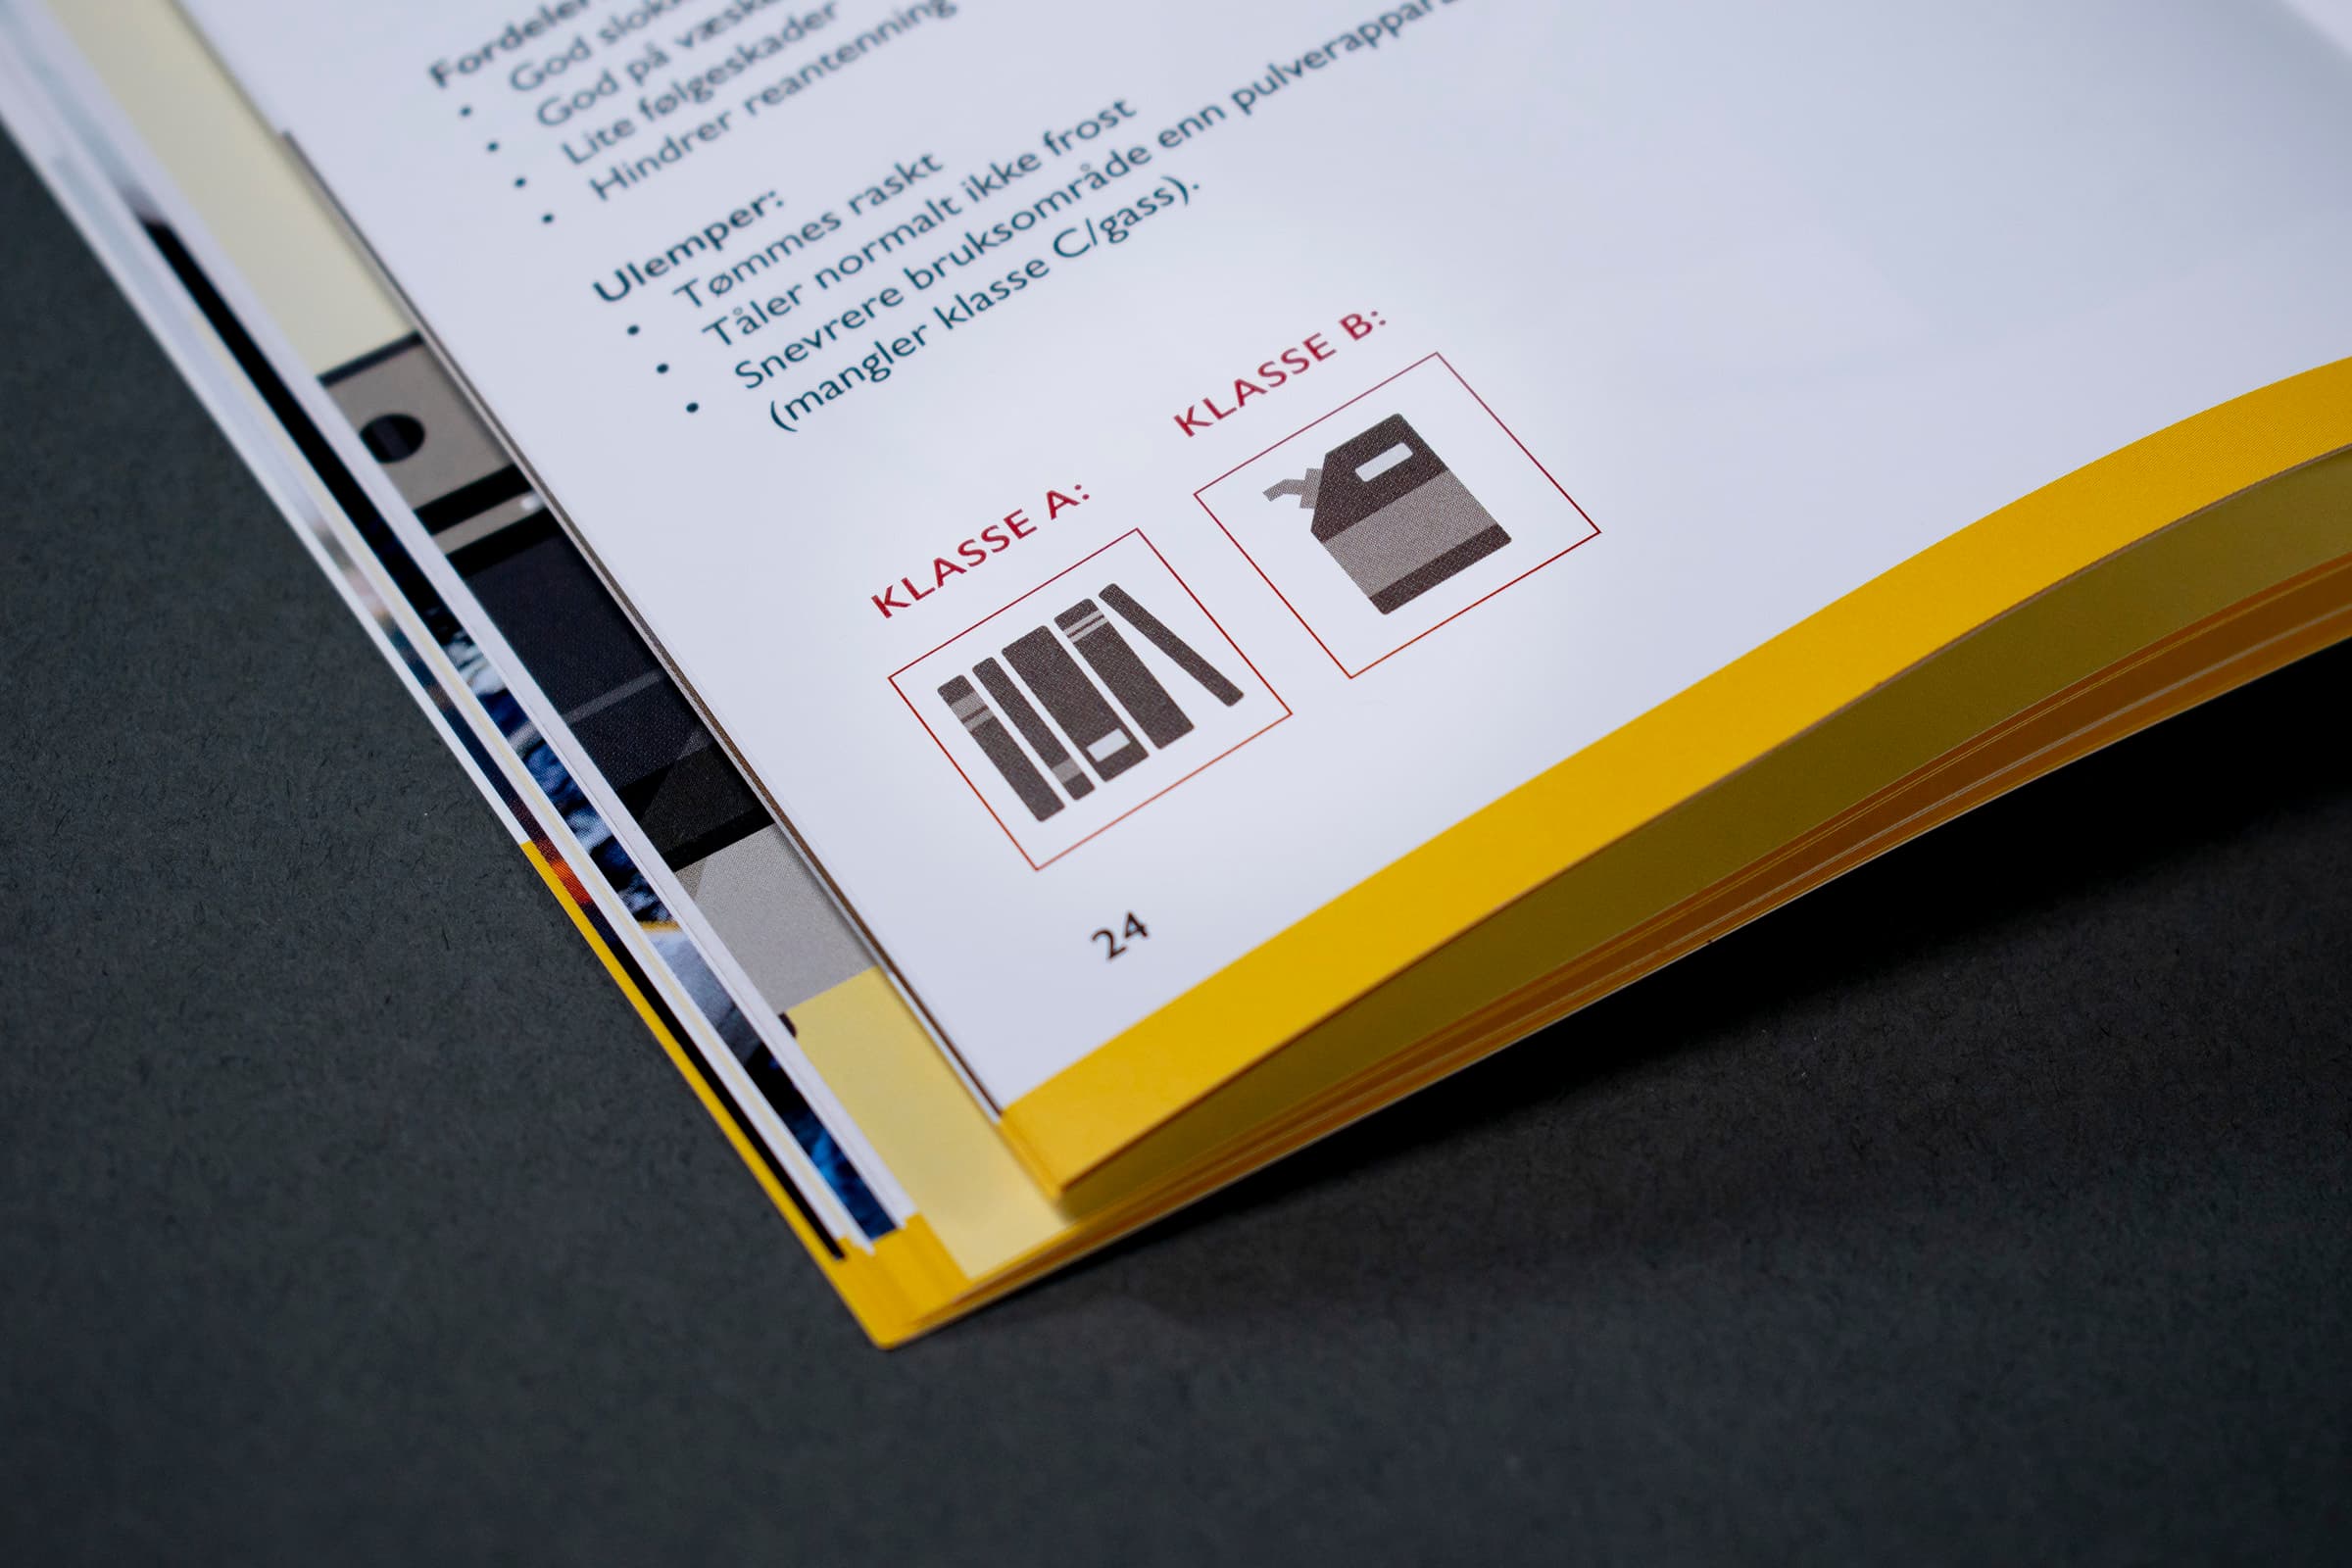 Bildet viser et nærbilde av en side i en bok. Den er en gul stripe nederst på siden. Det er tekst på siden, og nederst er det to ikoner som indikerer "klasse A" og "klasse B"